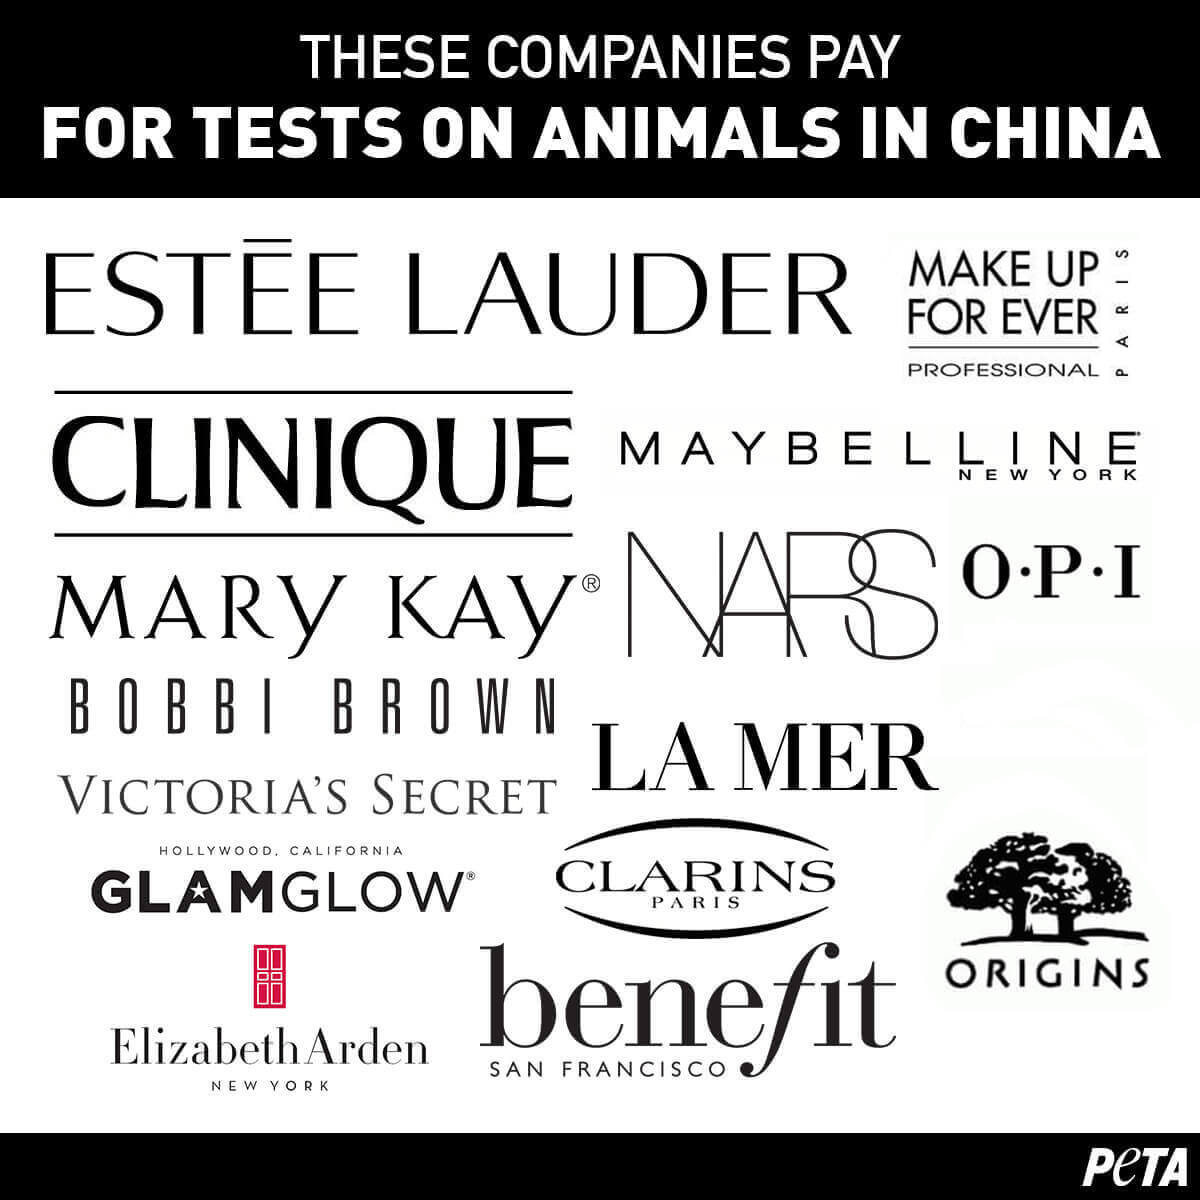 Vejrudsigt Meddele Høj eksponering These Beauty Brands Are Still Tested on Animals | PETA